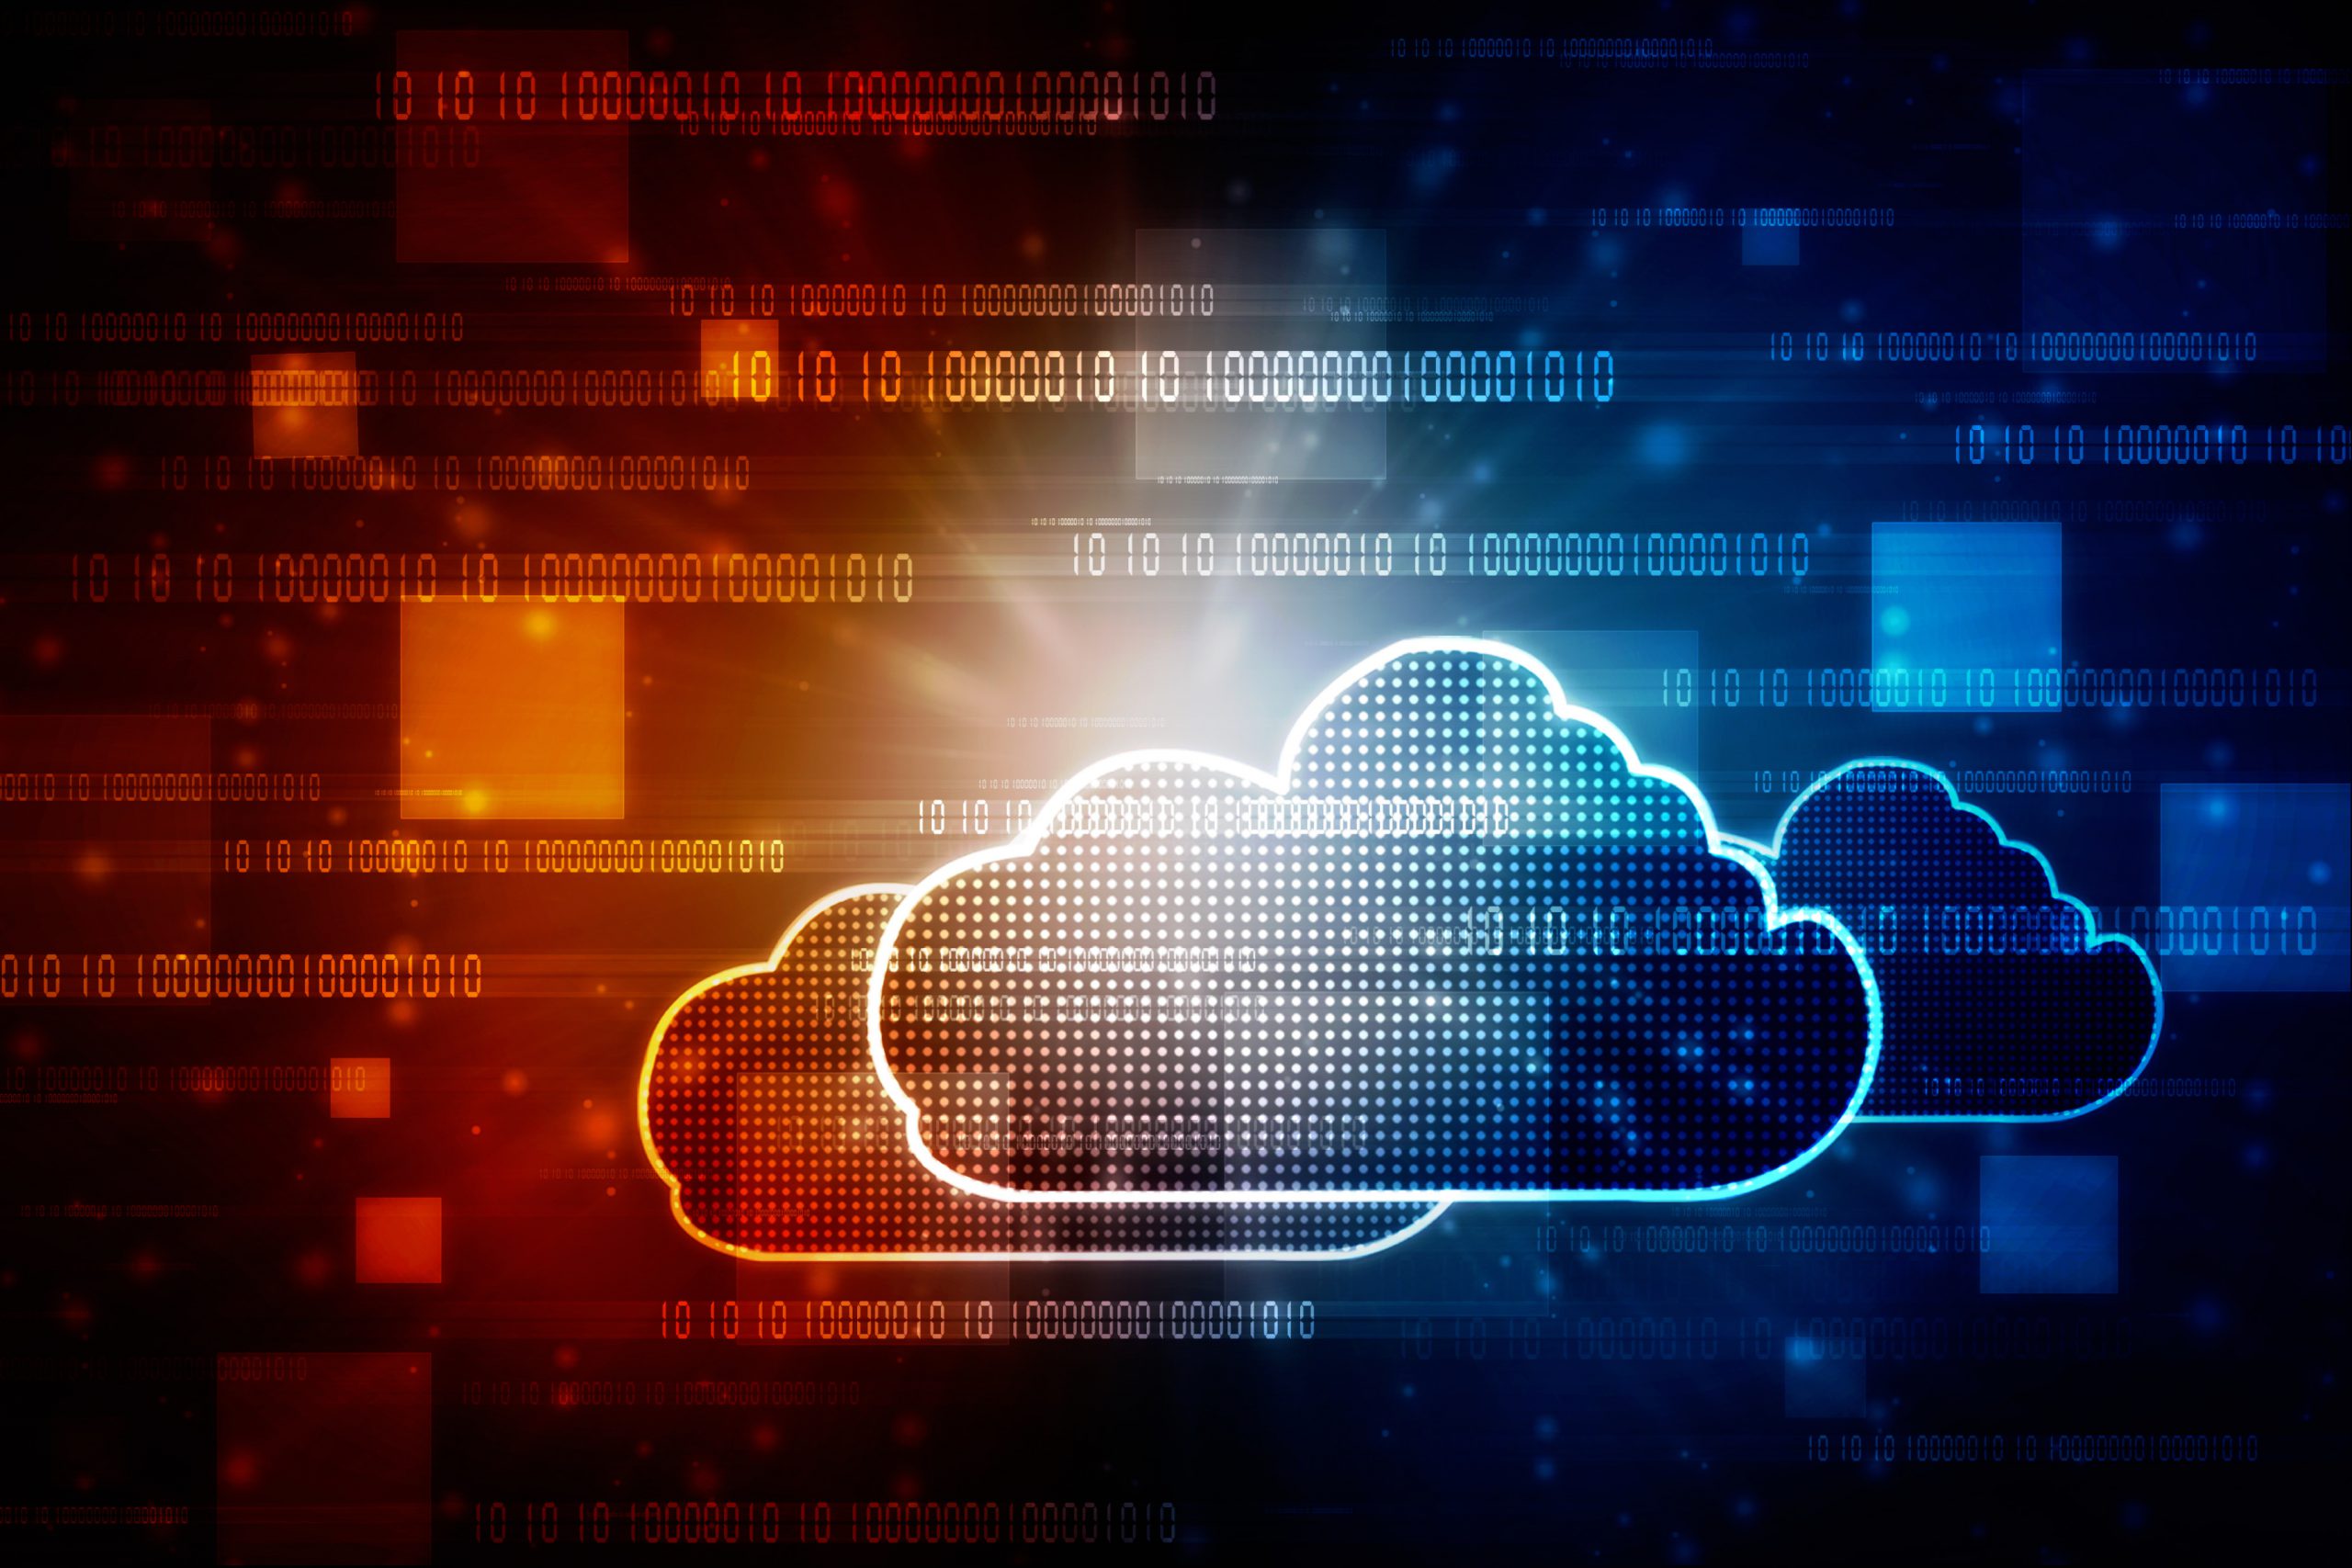 SecureTech Cloud Solutions